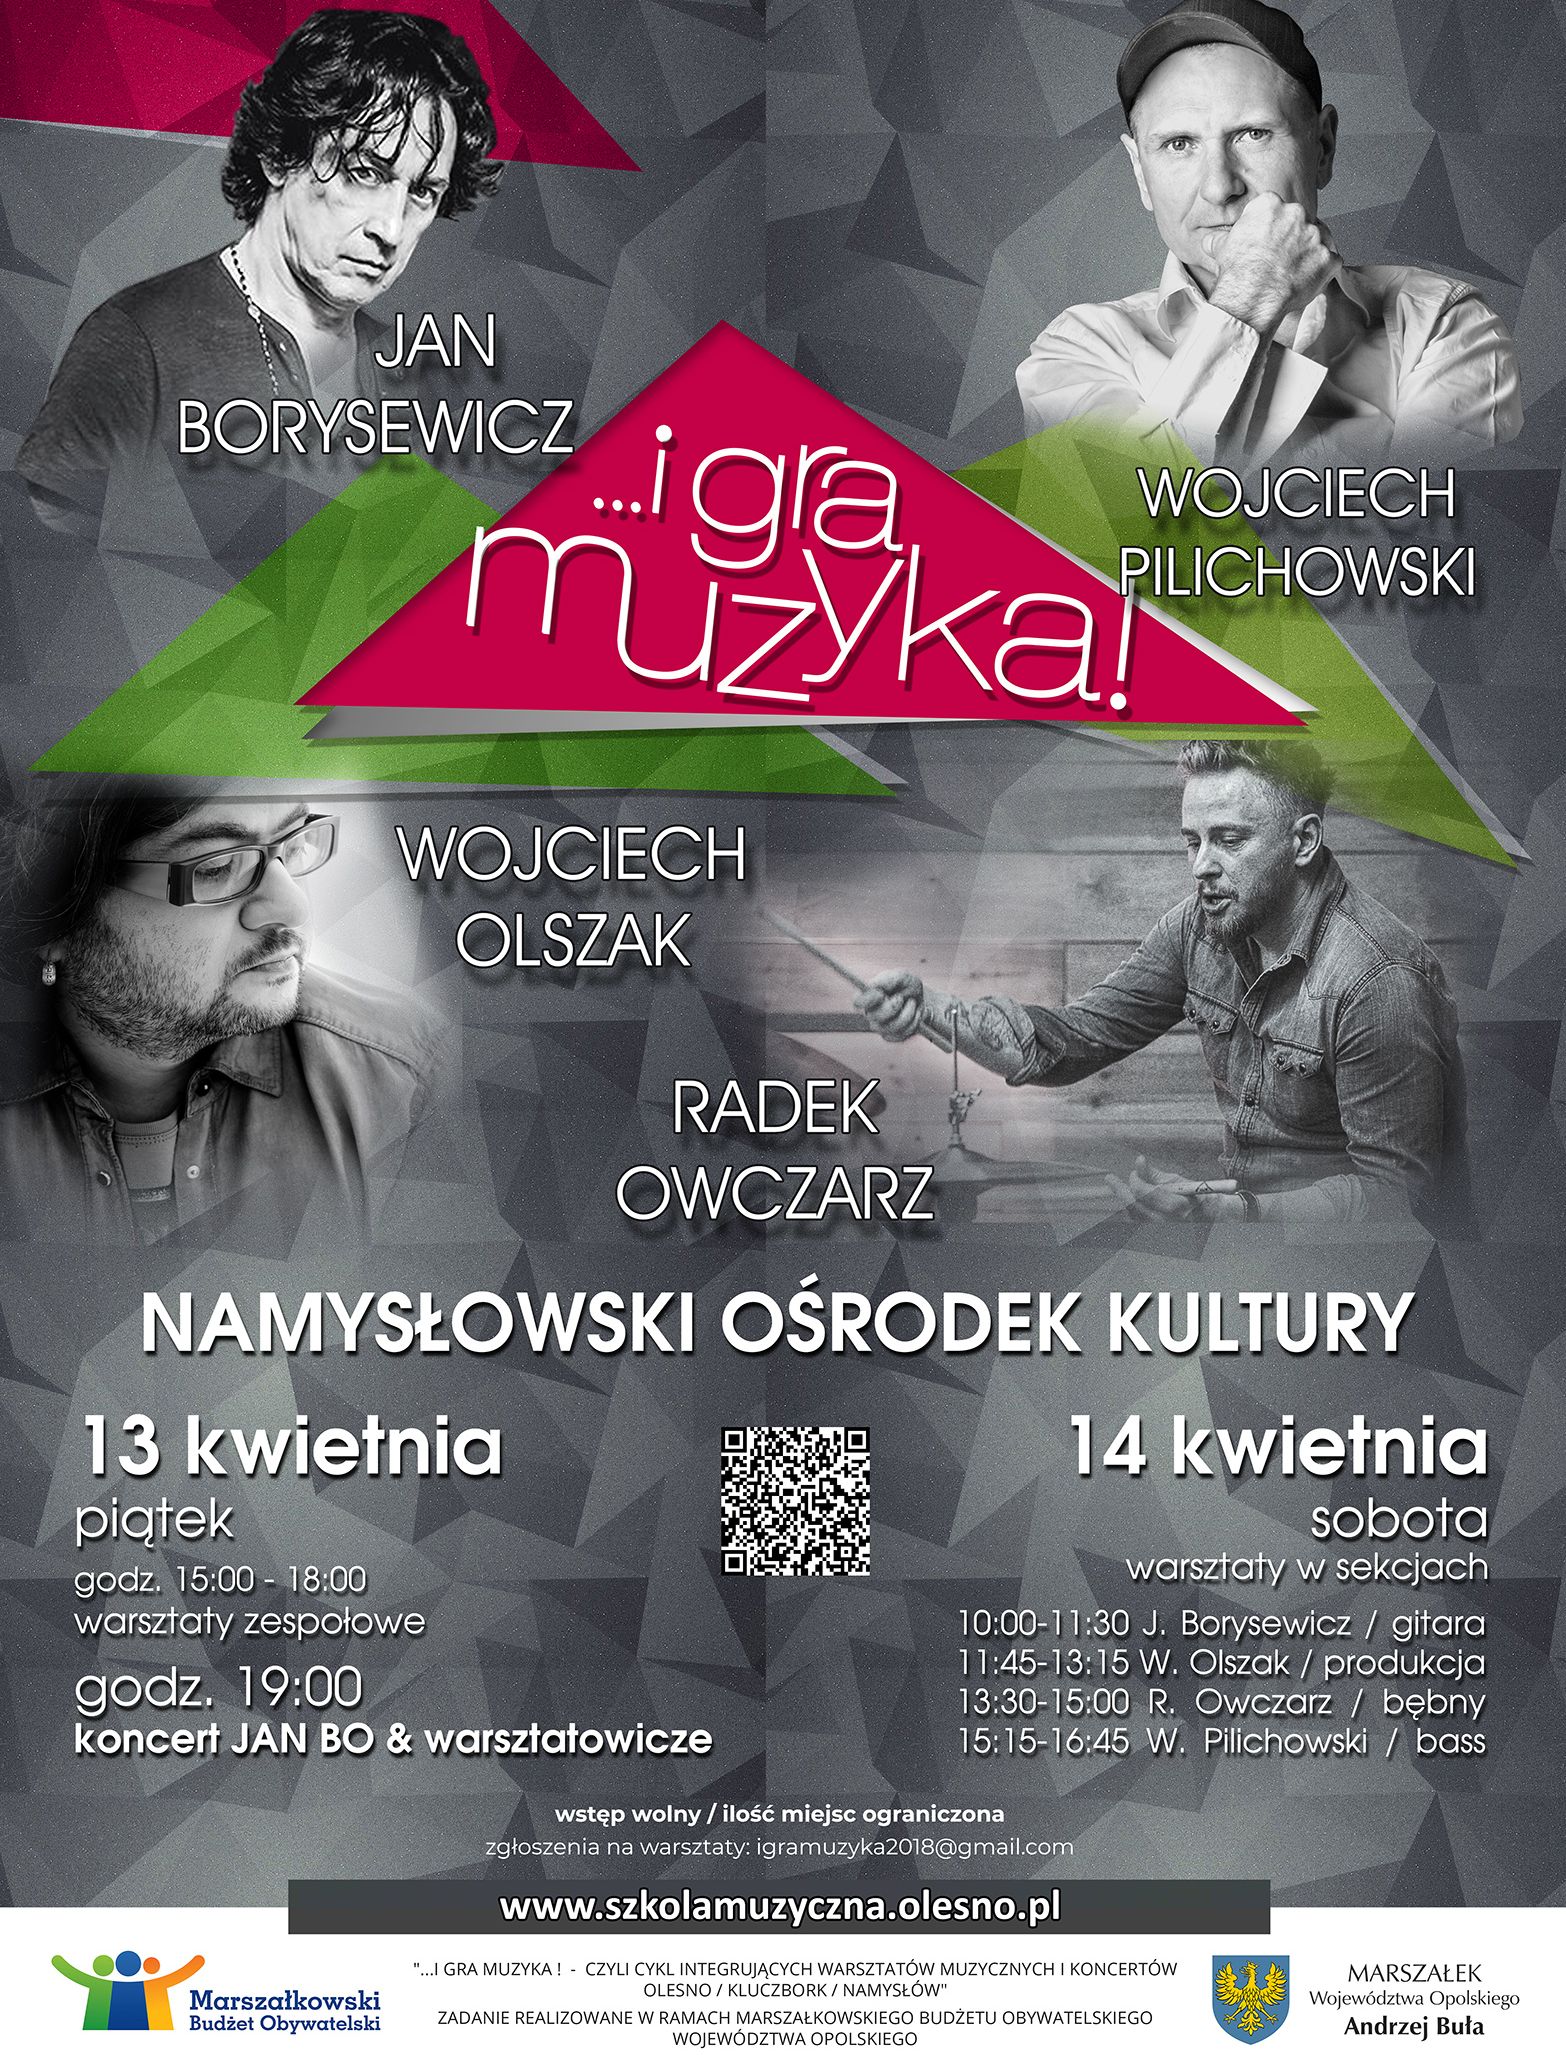 Warsztaty i koncert 'I muzyka gra' odbędą się w Namysłowskim Ośrodku Kultury